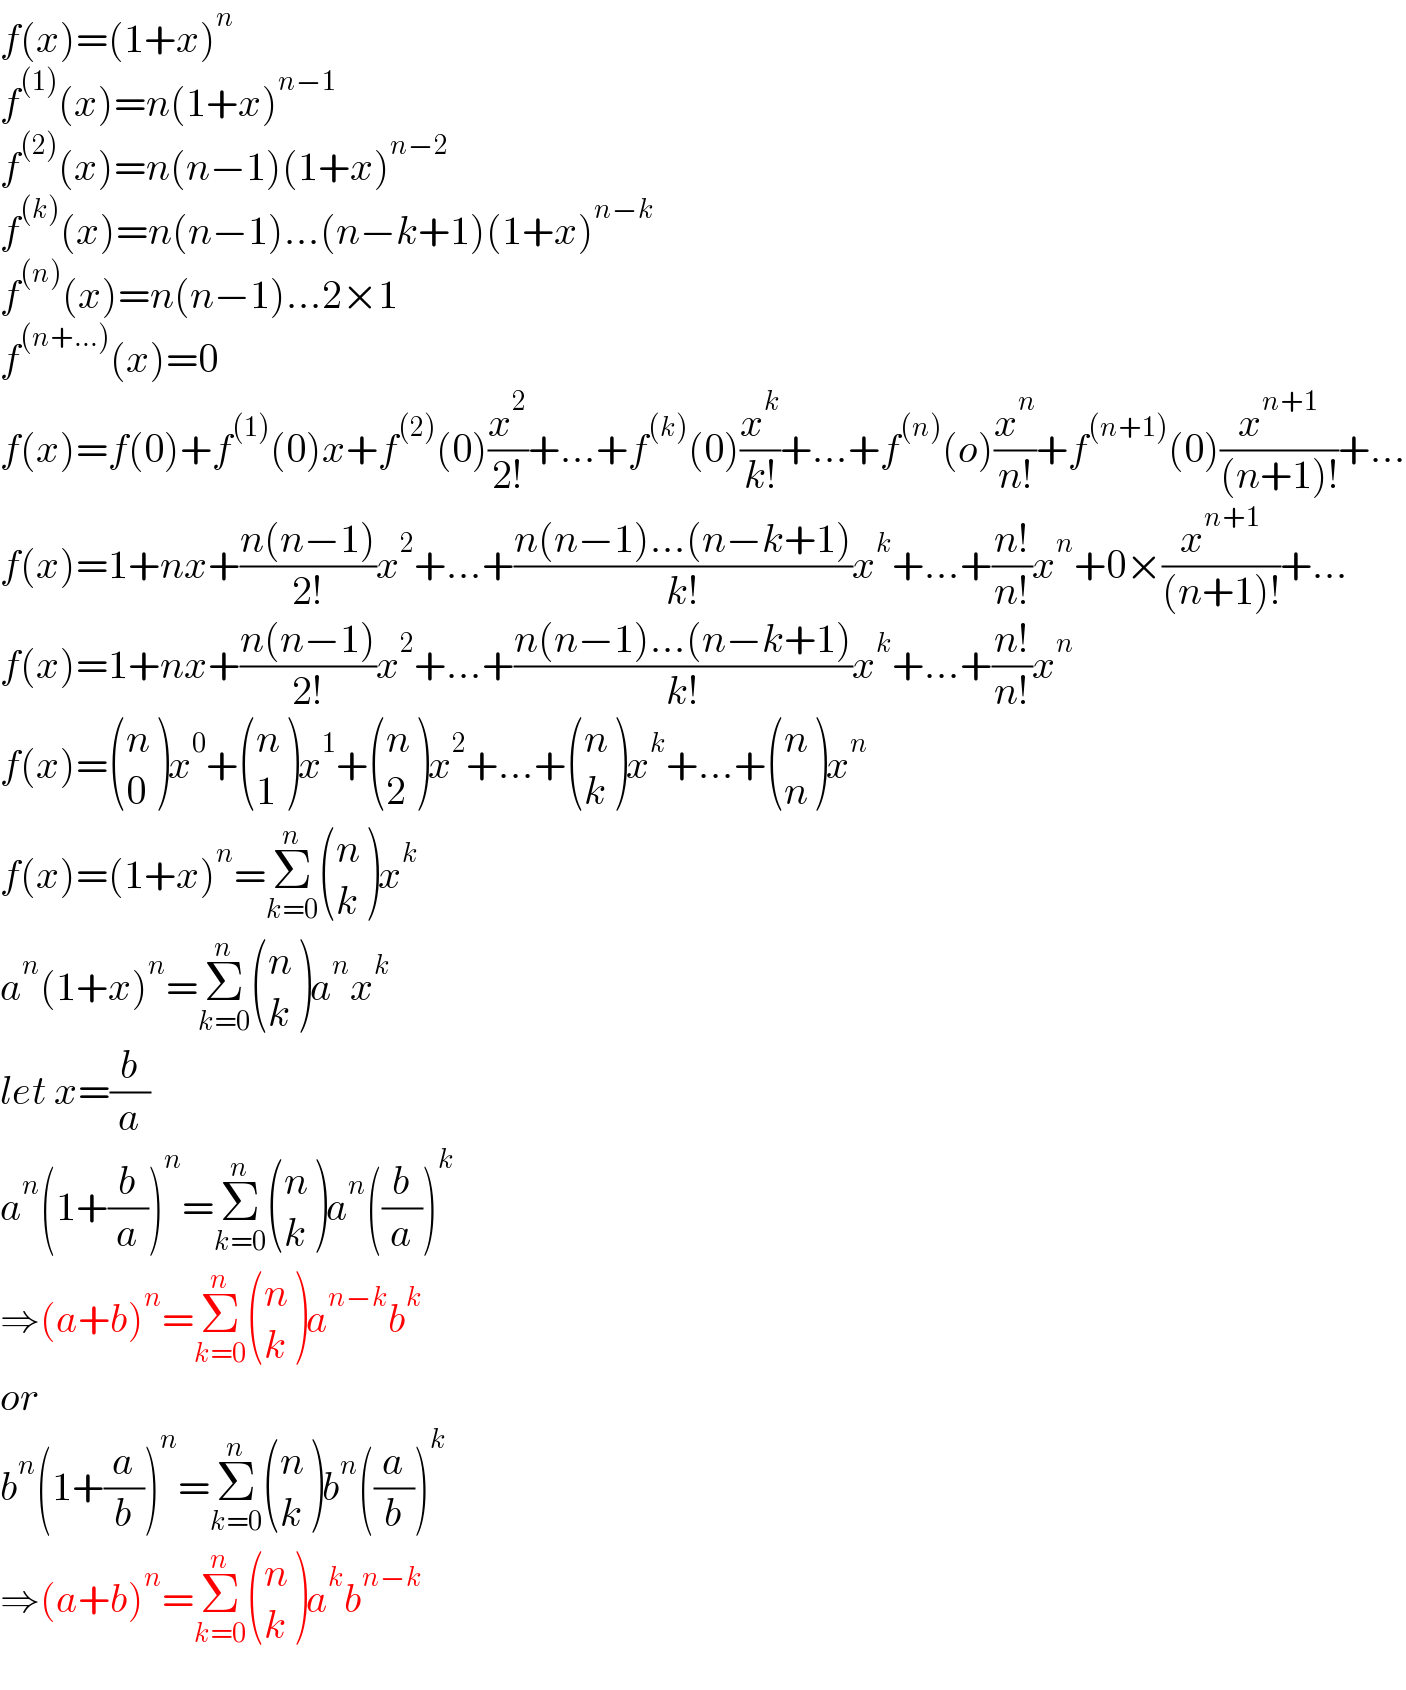 f(x)=(1+x)^n   f^((1)) (x)=n(1+x)^(n−1)   f^((2)) (x)=n(n−1)(1+x)^(n−2)   f^((k)) (x)=n(n−1)...(n−k+1)(1+x)^(n−k)   f^((n)) (x)=n(n−1)...2×1  f^((n+...)) (x)=0  f(x)=f(0)+f^((1)) (0)x+f^((2)) (0)(x^2 /(2!))+...+f^((k)) (0)(x^k /(k!))+...+f^((n)) (o)(x^n /(n!))+f^((n+1)) (0)(x^(n+1) /((n+1)!))+...  f(x)=1+nx+((n(n−1))/(2!))x^2 +...+((n(n−1)...(n−k+1))/(k!))x^k +...+((n!)/(n!))x^n +0×(x^(n+1) /((n+1)!))+...  f(x)=1+nx+((n(n−1))/(2!))x^2 +...+((n(n−1)...(n−k+1))/(k!))x^k +...+((n!)/(n!))x^n   f(x)= ((n),(0) )x^0 + ((n),(1) )x^1 + ((n),(2) )x^2 +...+ ((n),(k) )x^k +...+ ((n),(n) )x^n   f(x)=(1+x)^n =Σ_(k=0) ^n  ((n),(k) )x^k   a^n (1+x)^n =Σ_(k=0) ^n  ((n),(k) )a^n x^k   let x=(b/a)  a^n (1+(b/a))^n =Σ_(k=0) ^n  ((n),(k) )a^n ((b/a))^k   ⇒(a+b)^n =Σ_(k=0) ^n  ((n),(k) )a^(n−k) b^k   or  b^n (1+(a/b))^n =Σ_(k=0) ^n  ((n),(k) )b^n ((a/b))^k   ⇒(a+b)^n =Σ_(k=0) ^n  ((n),(k) )a^k b^(n−k)   